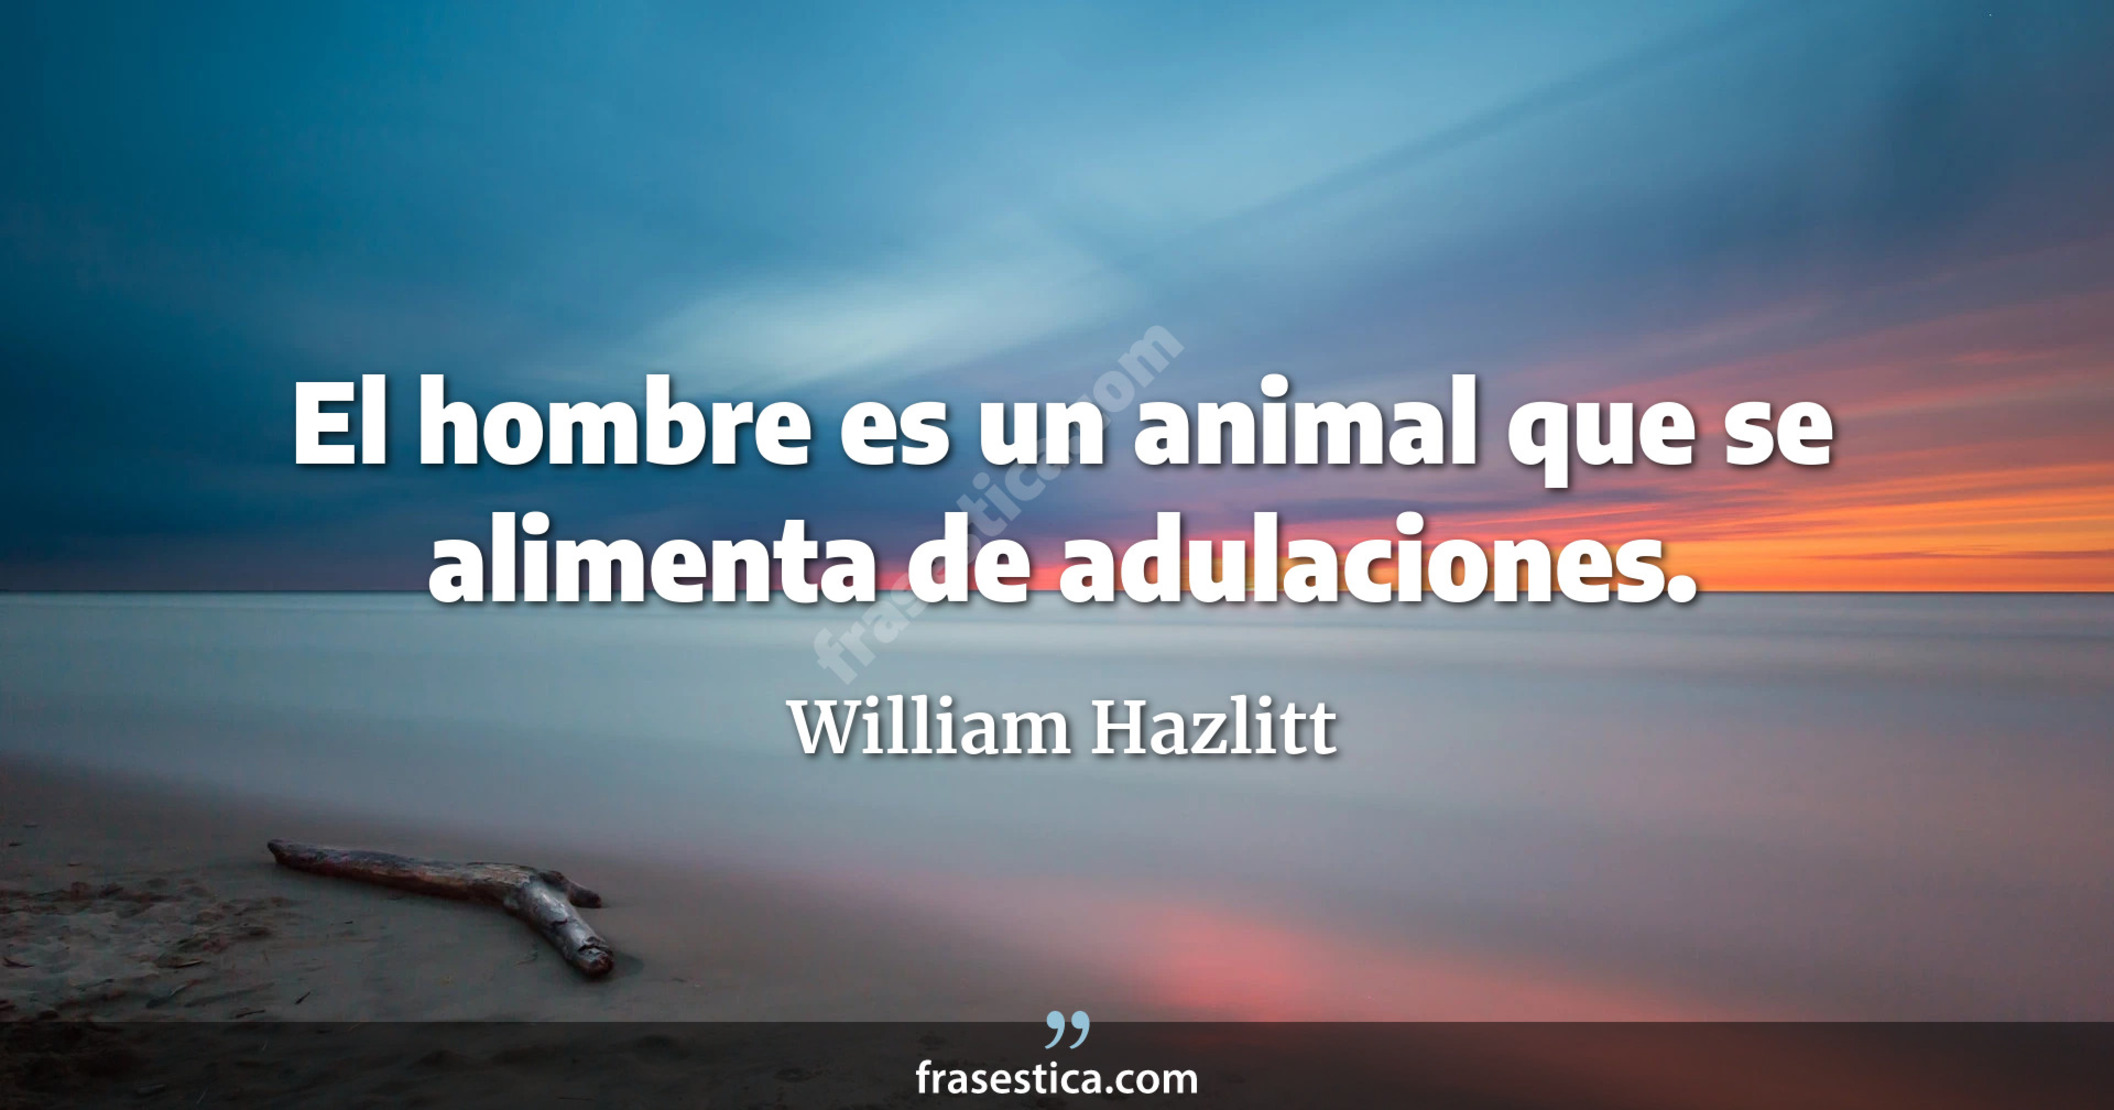 El hombre es un animal que se alimenta de adulaciones. - William Hazlitt